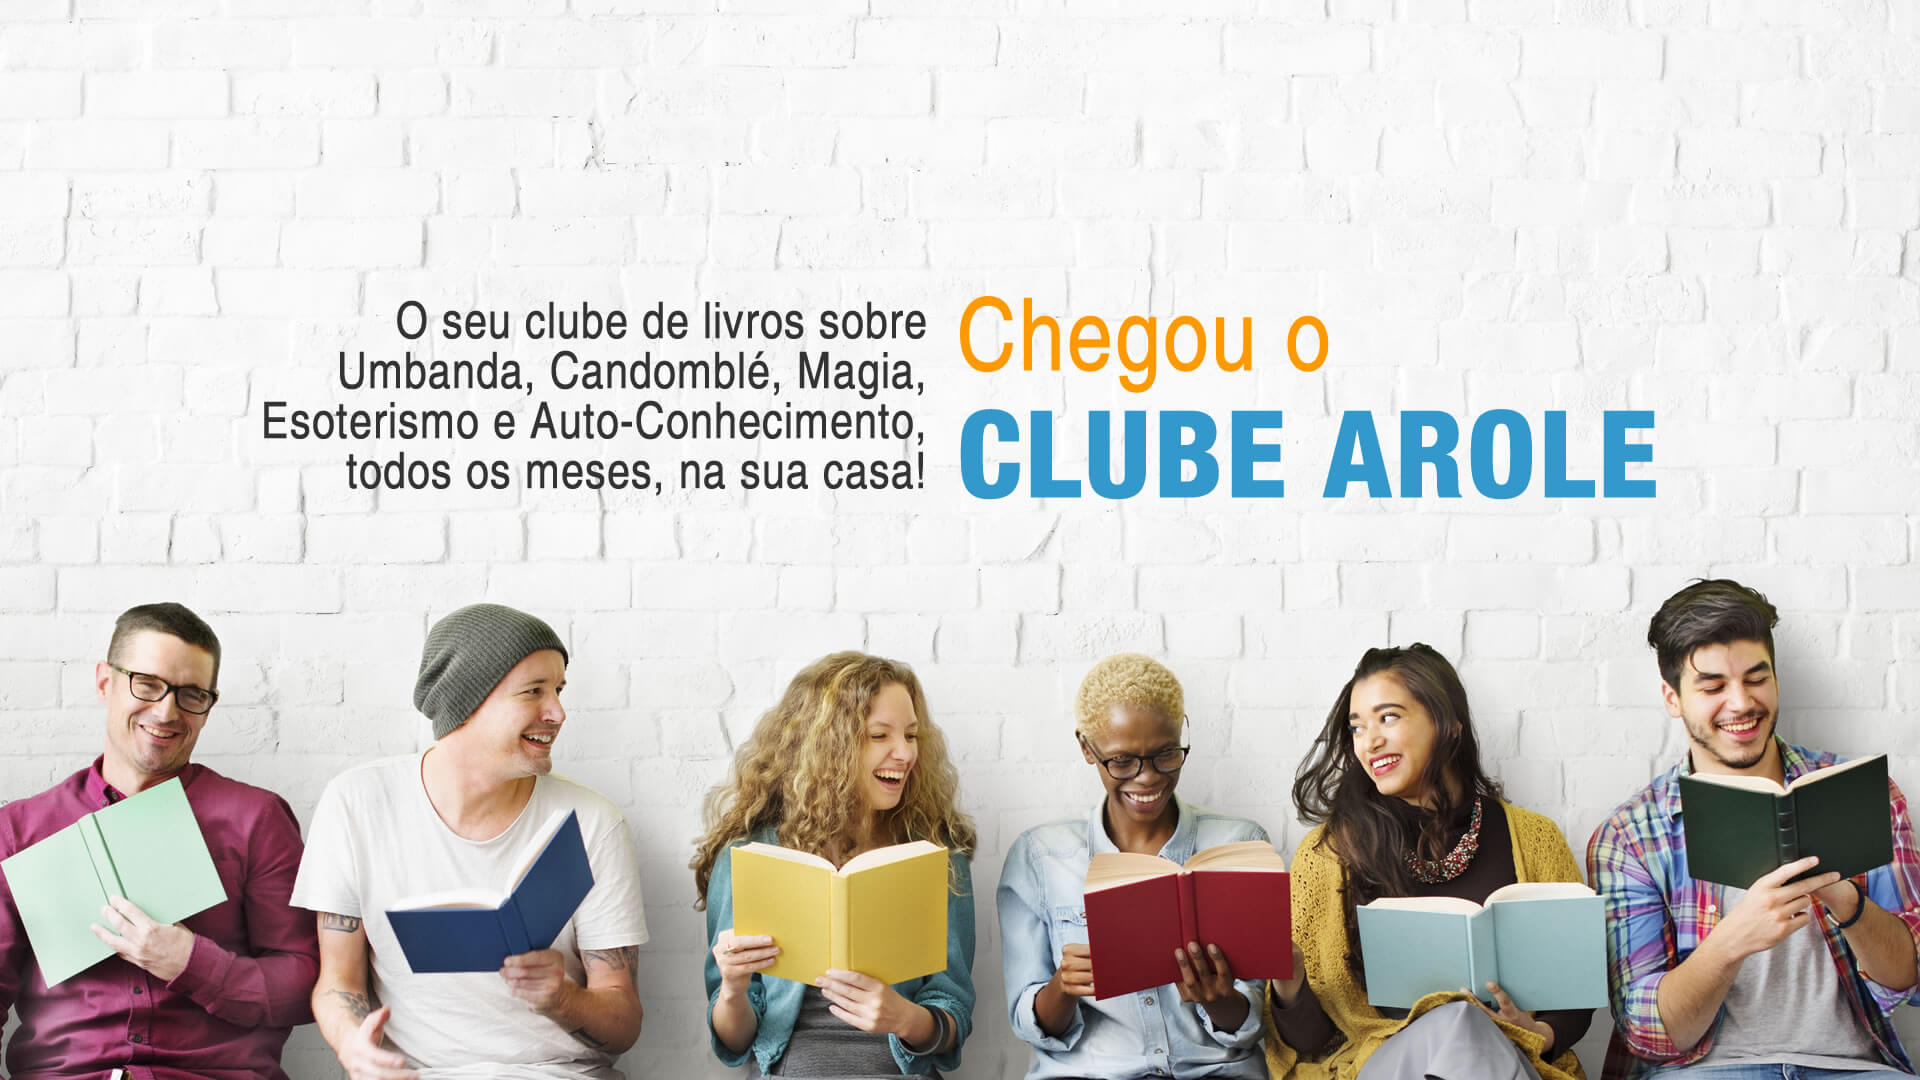 Arole Cultural lança clube de assinatura de livros sobre espiritualidade afro-brasileira